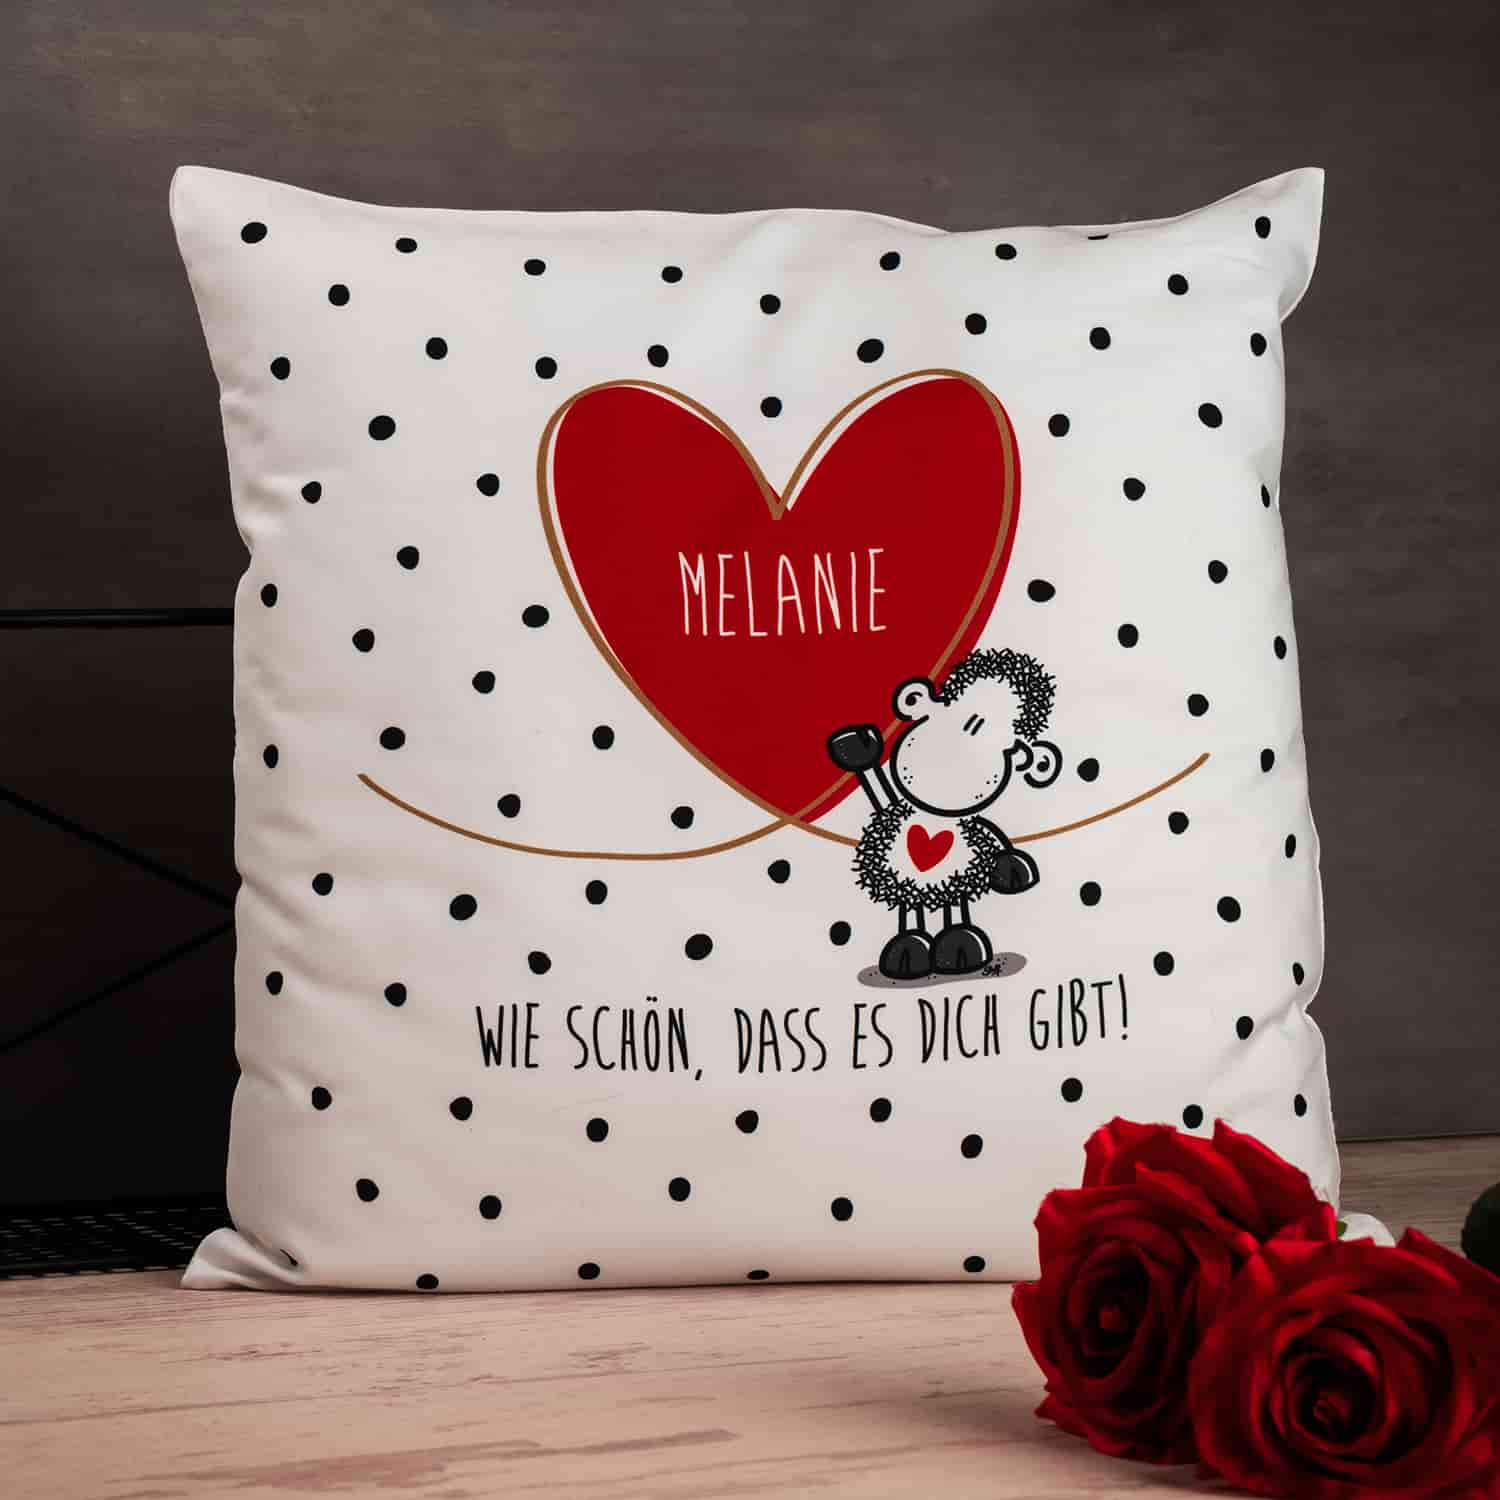 Personalisiertes Kissen mit dem Spruch "Wie schön, dass es Dich gibt!"  und dem Beispielsnamen "Melanie"